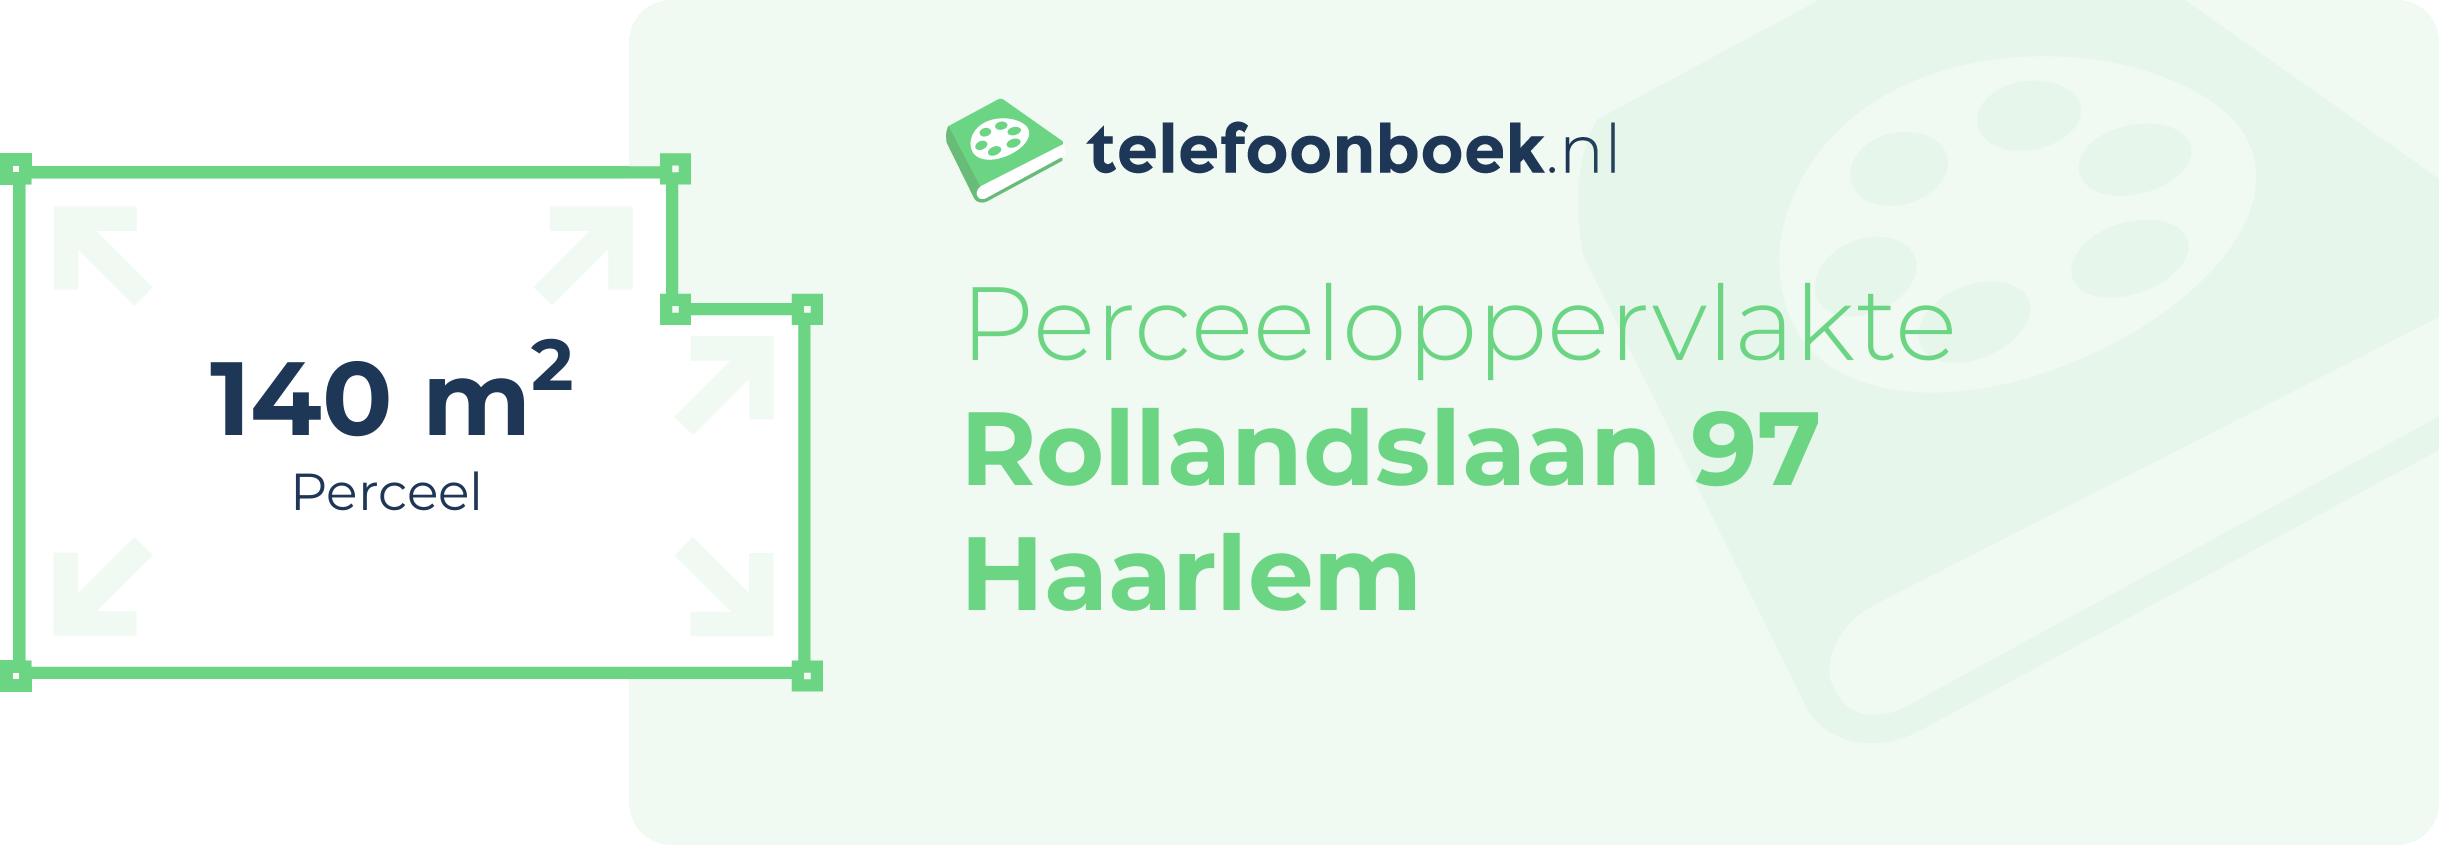 Perceeloppervlakte Rollandslaan 97 Haarlem